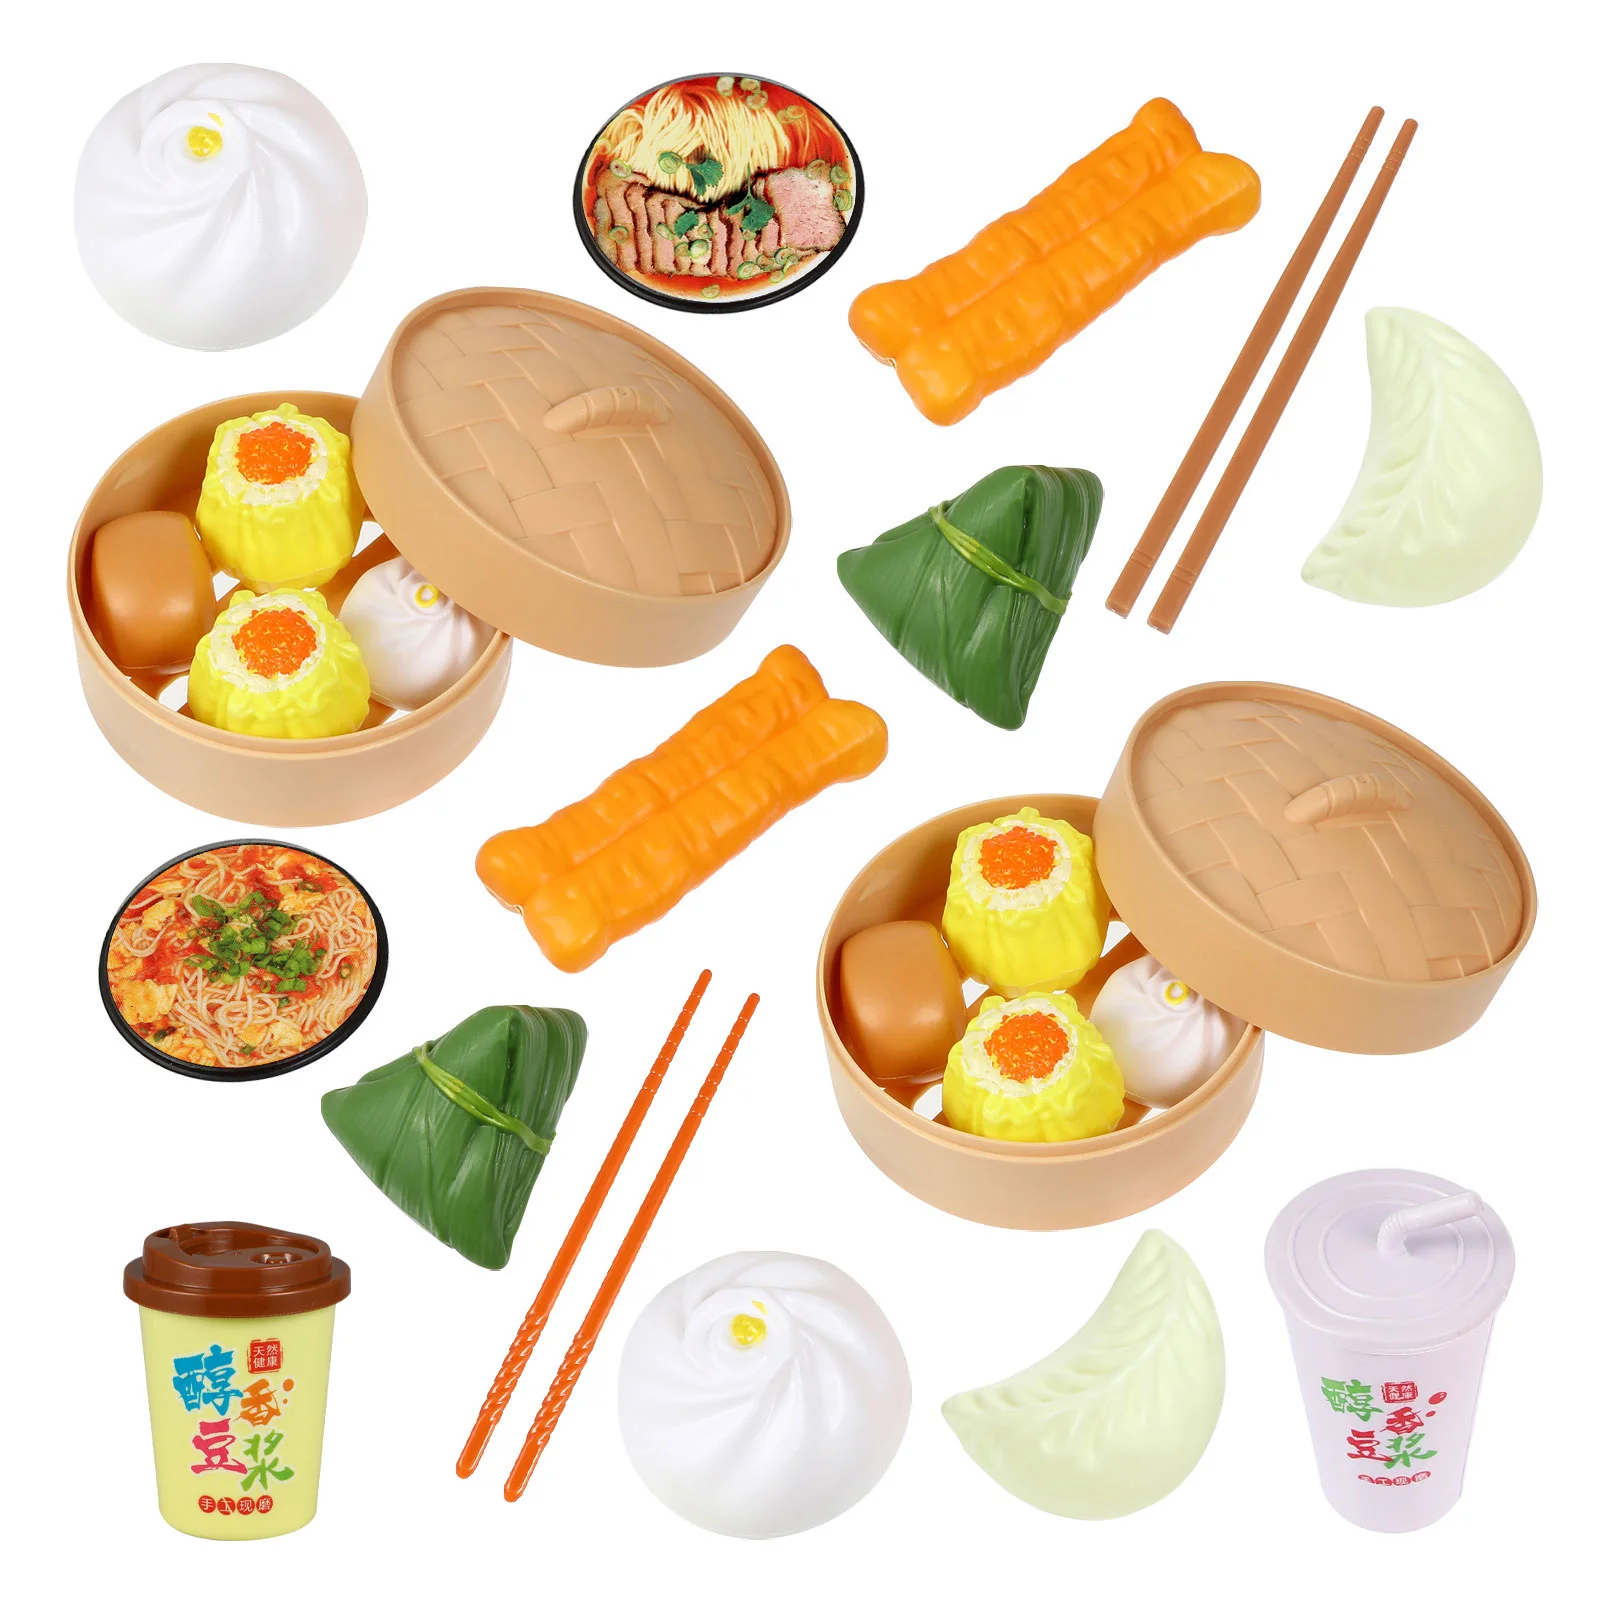 

Игрушка для еды, кухонные игрушки, детский китайский набор для ролевых игр на завтрак, искусственные мини-аксессуары для приготовления пищи, игровой набор, миниатюрная имитация